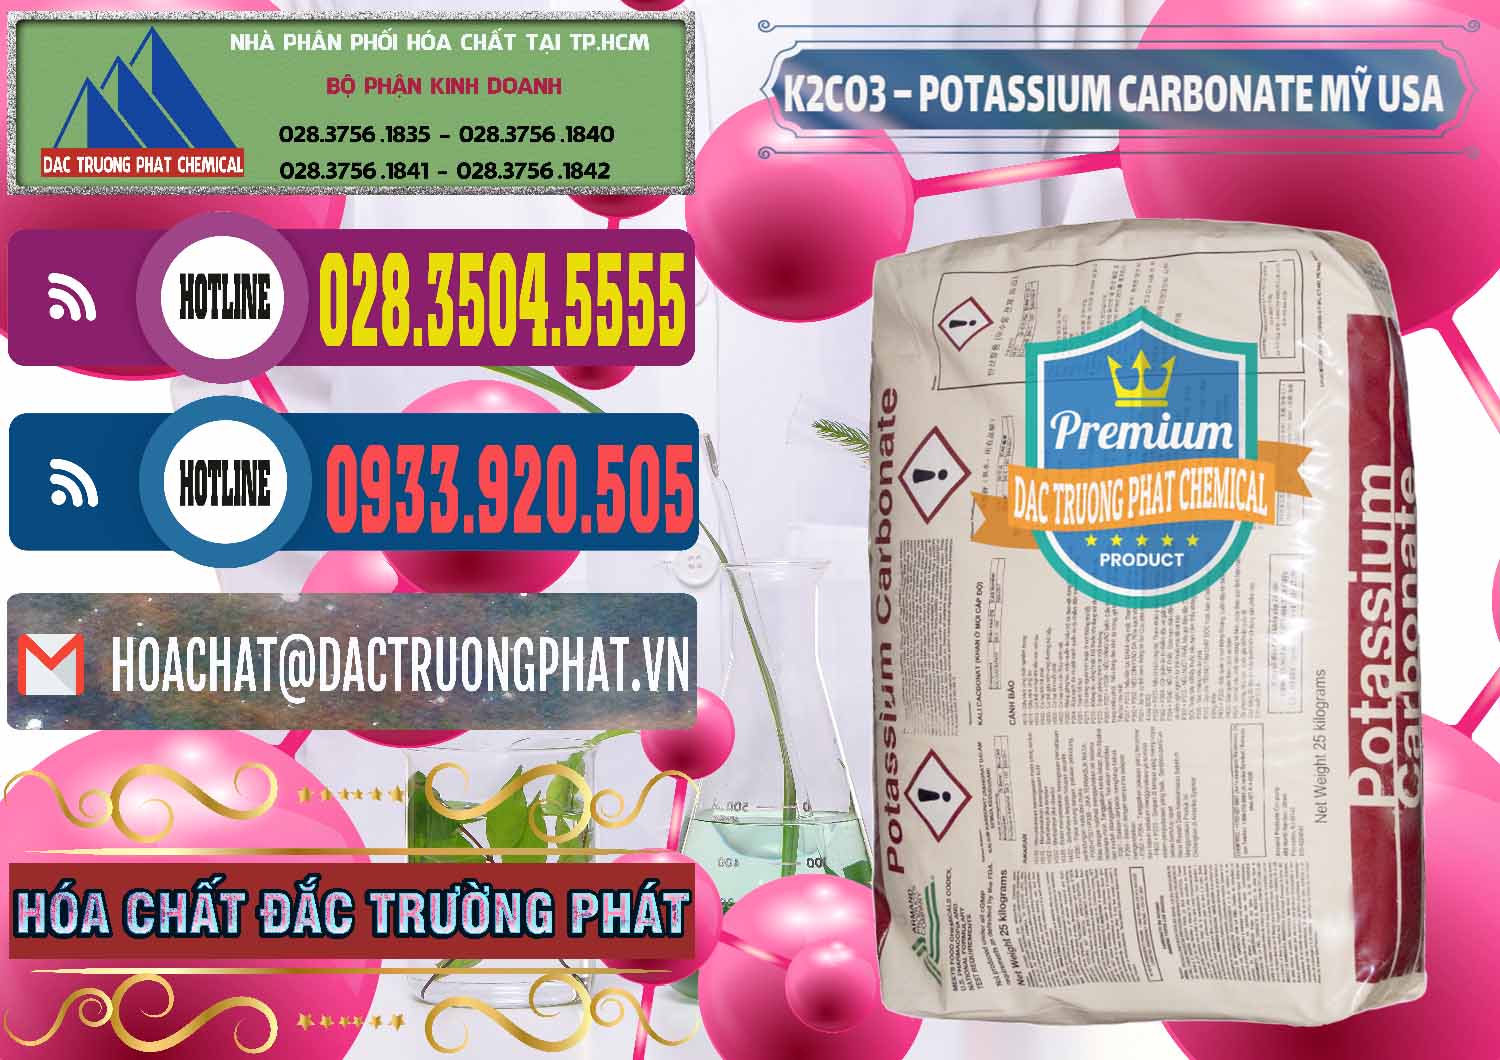 Cty cung ứng & bán K2Co3 – Potassium Carbonate Mỹ USA - 0082 - Phân phối và bán hóa chất tại TP.HCM - muabanhoachat.com.vn